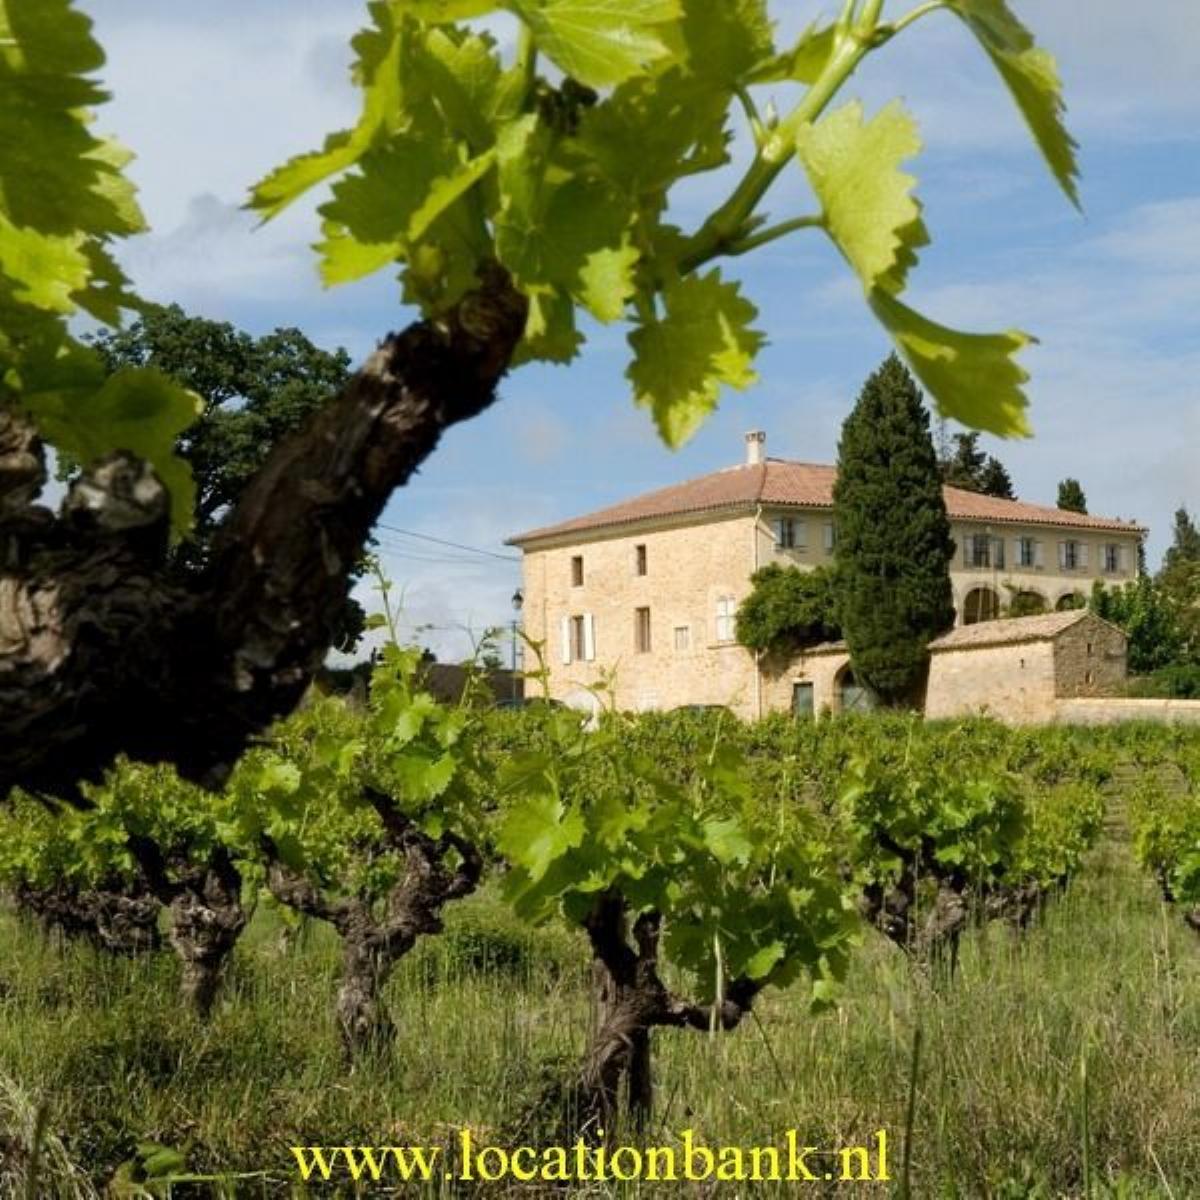 Oude franse villa met court in de wijngaarden